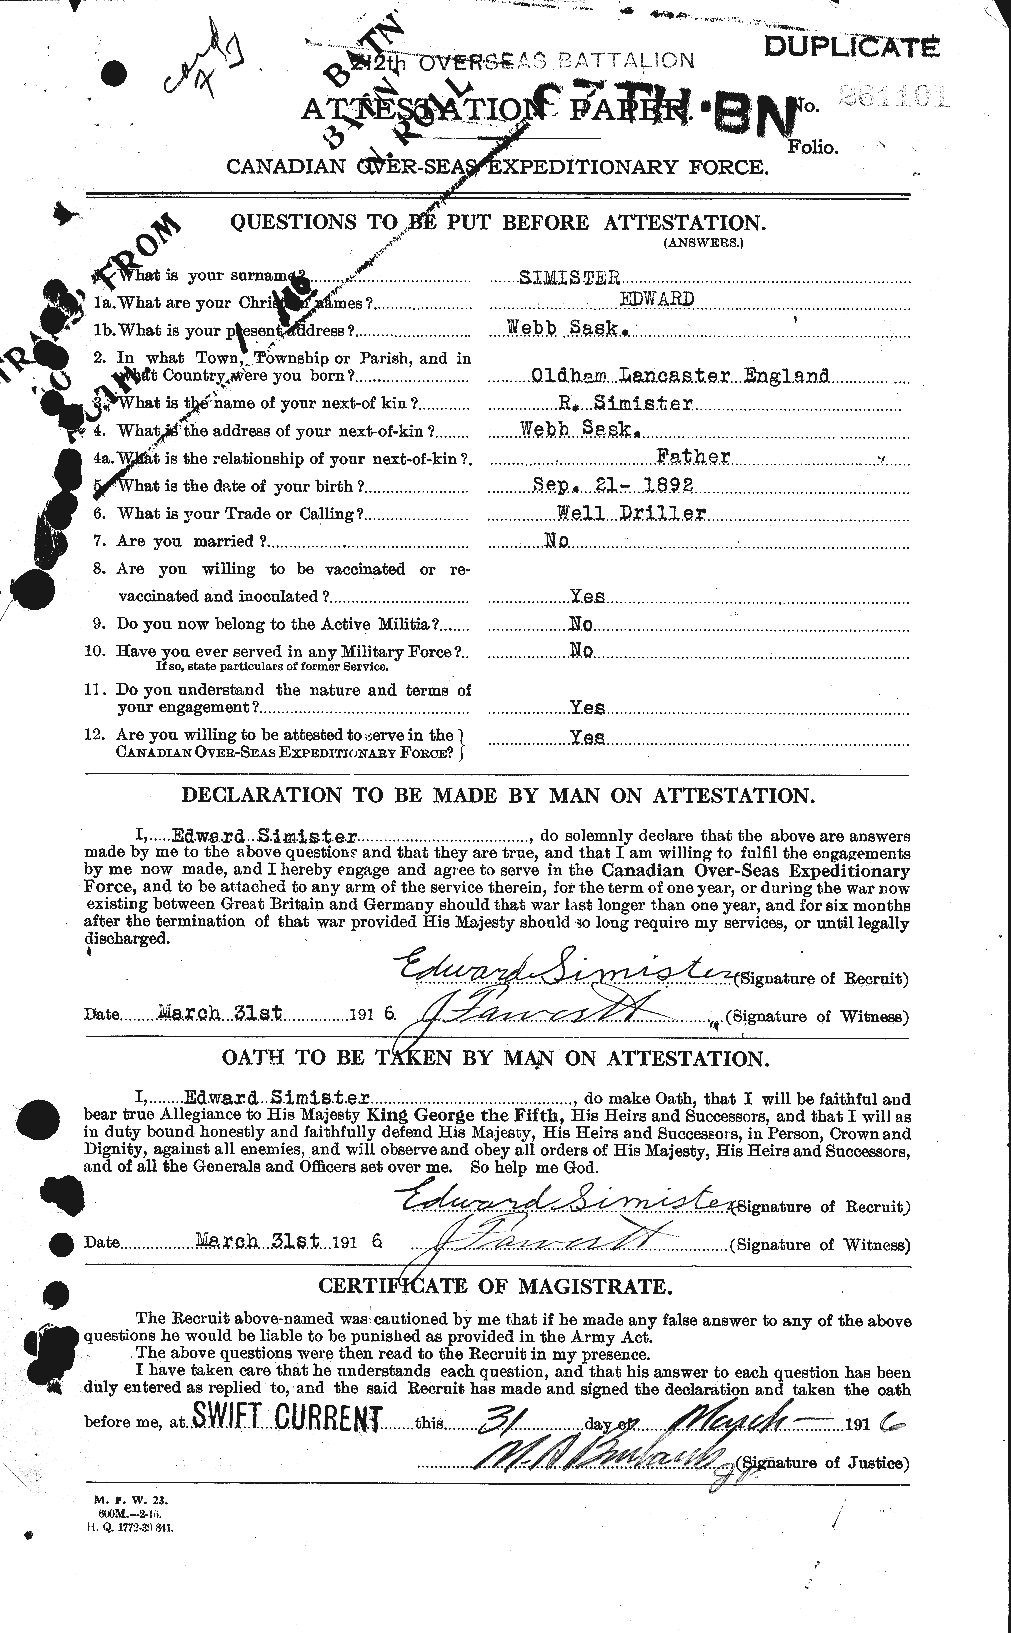 Dossiers du Personnel de la Première Guerre mondiale - CEC 100256a